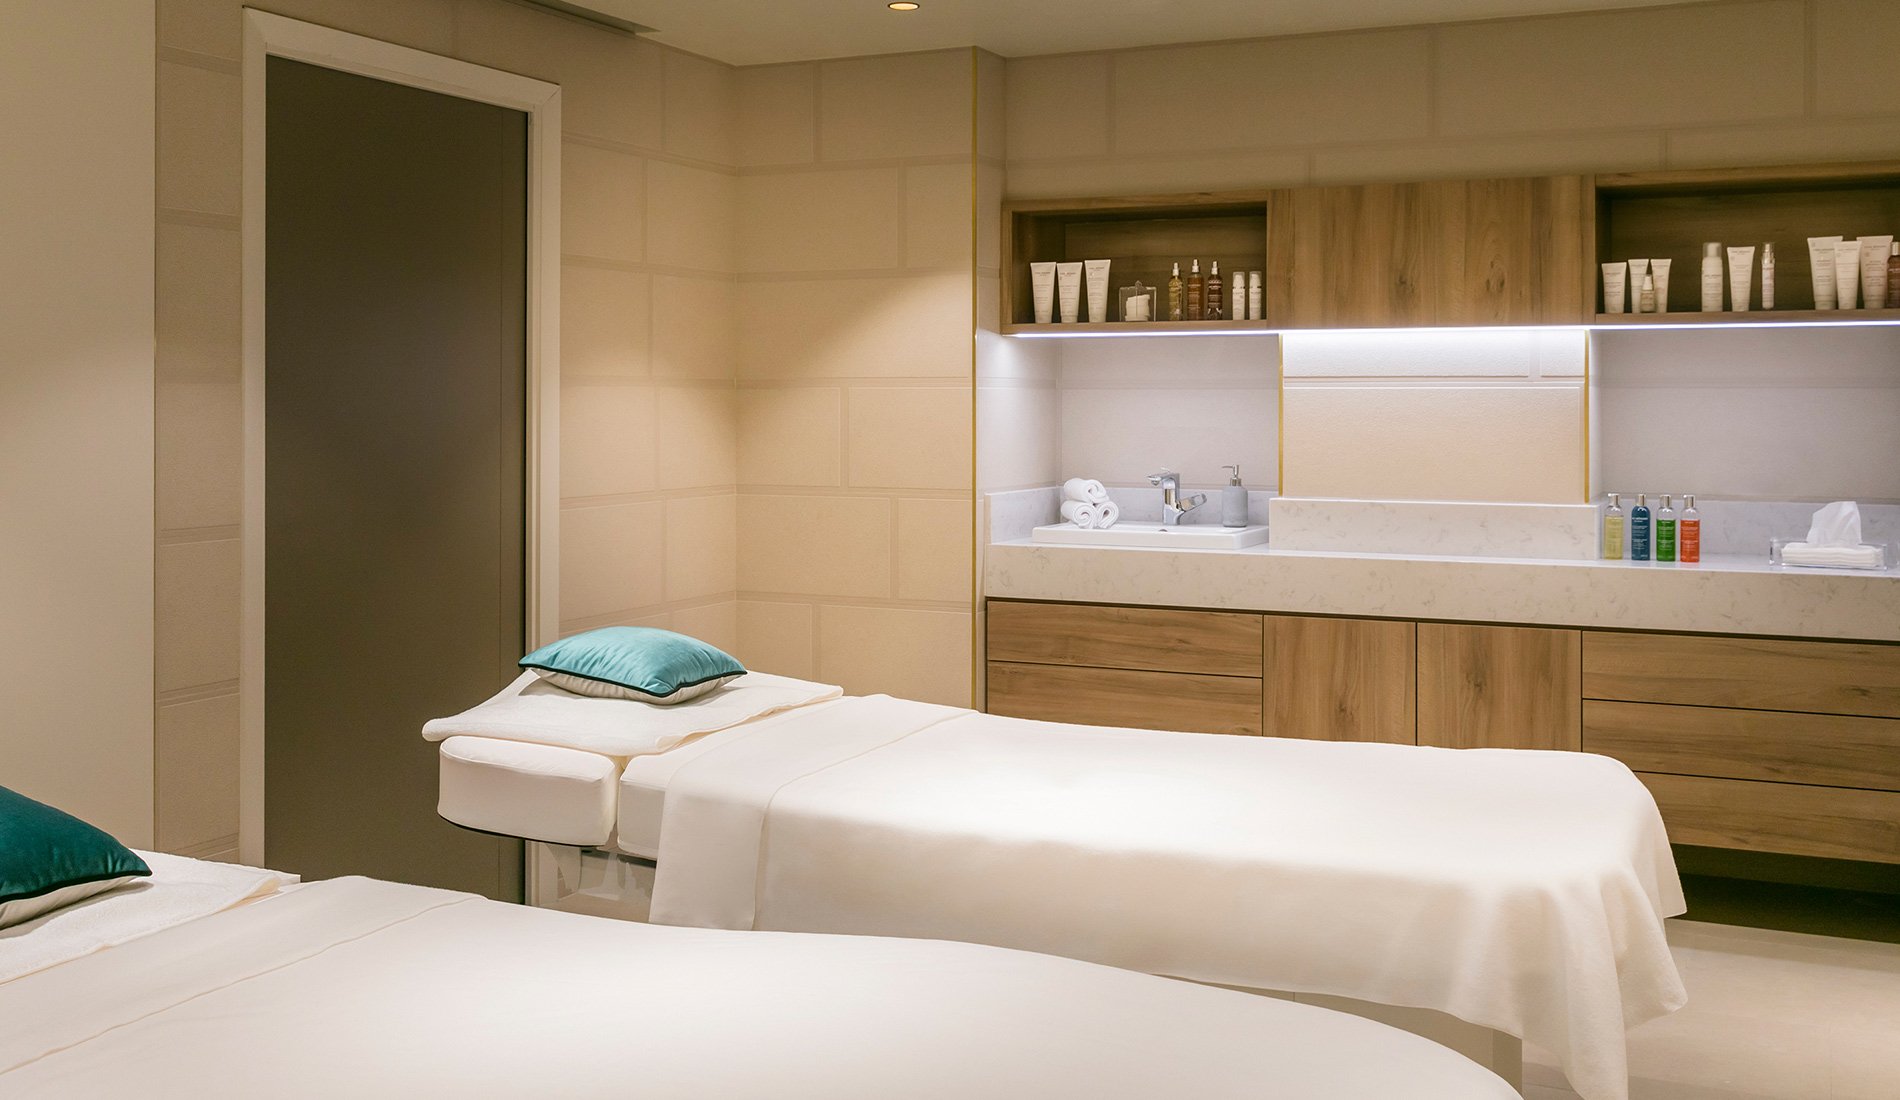 Luxury hotel - Maison Albar Hotels Le Pont-Neuf - 5-star - massage